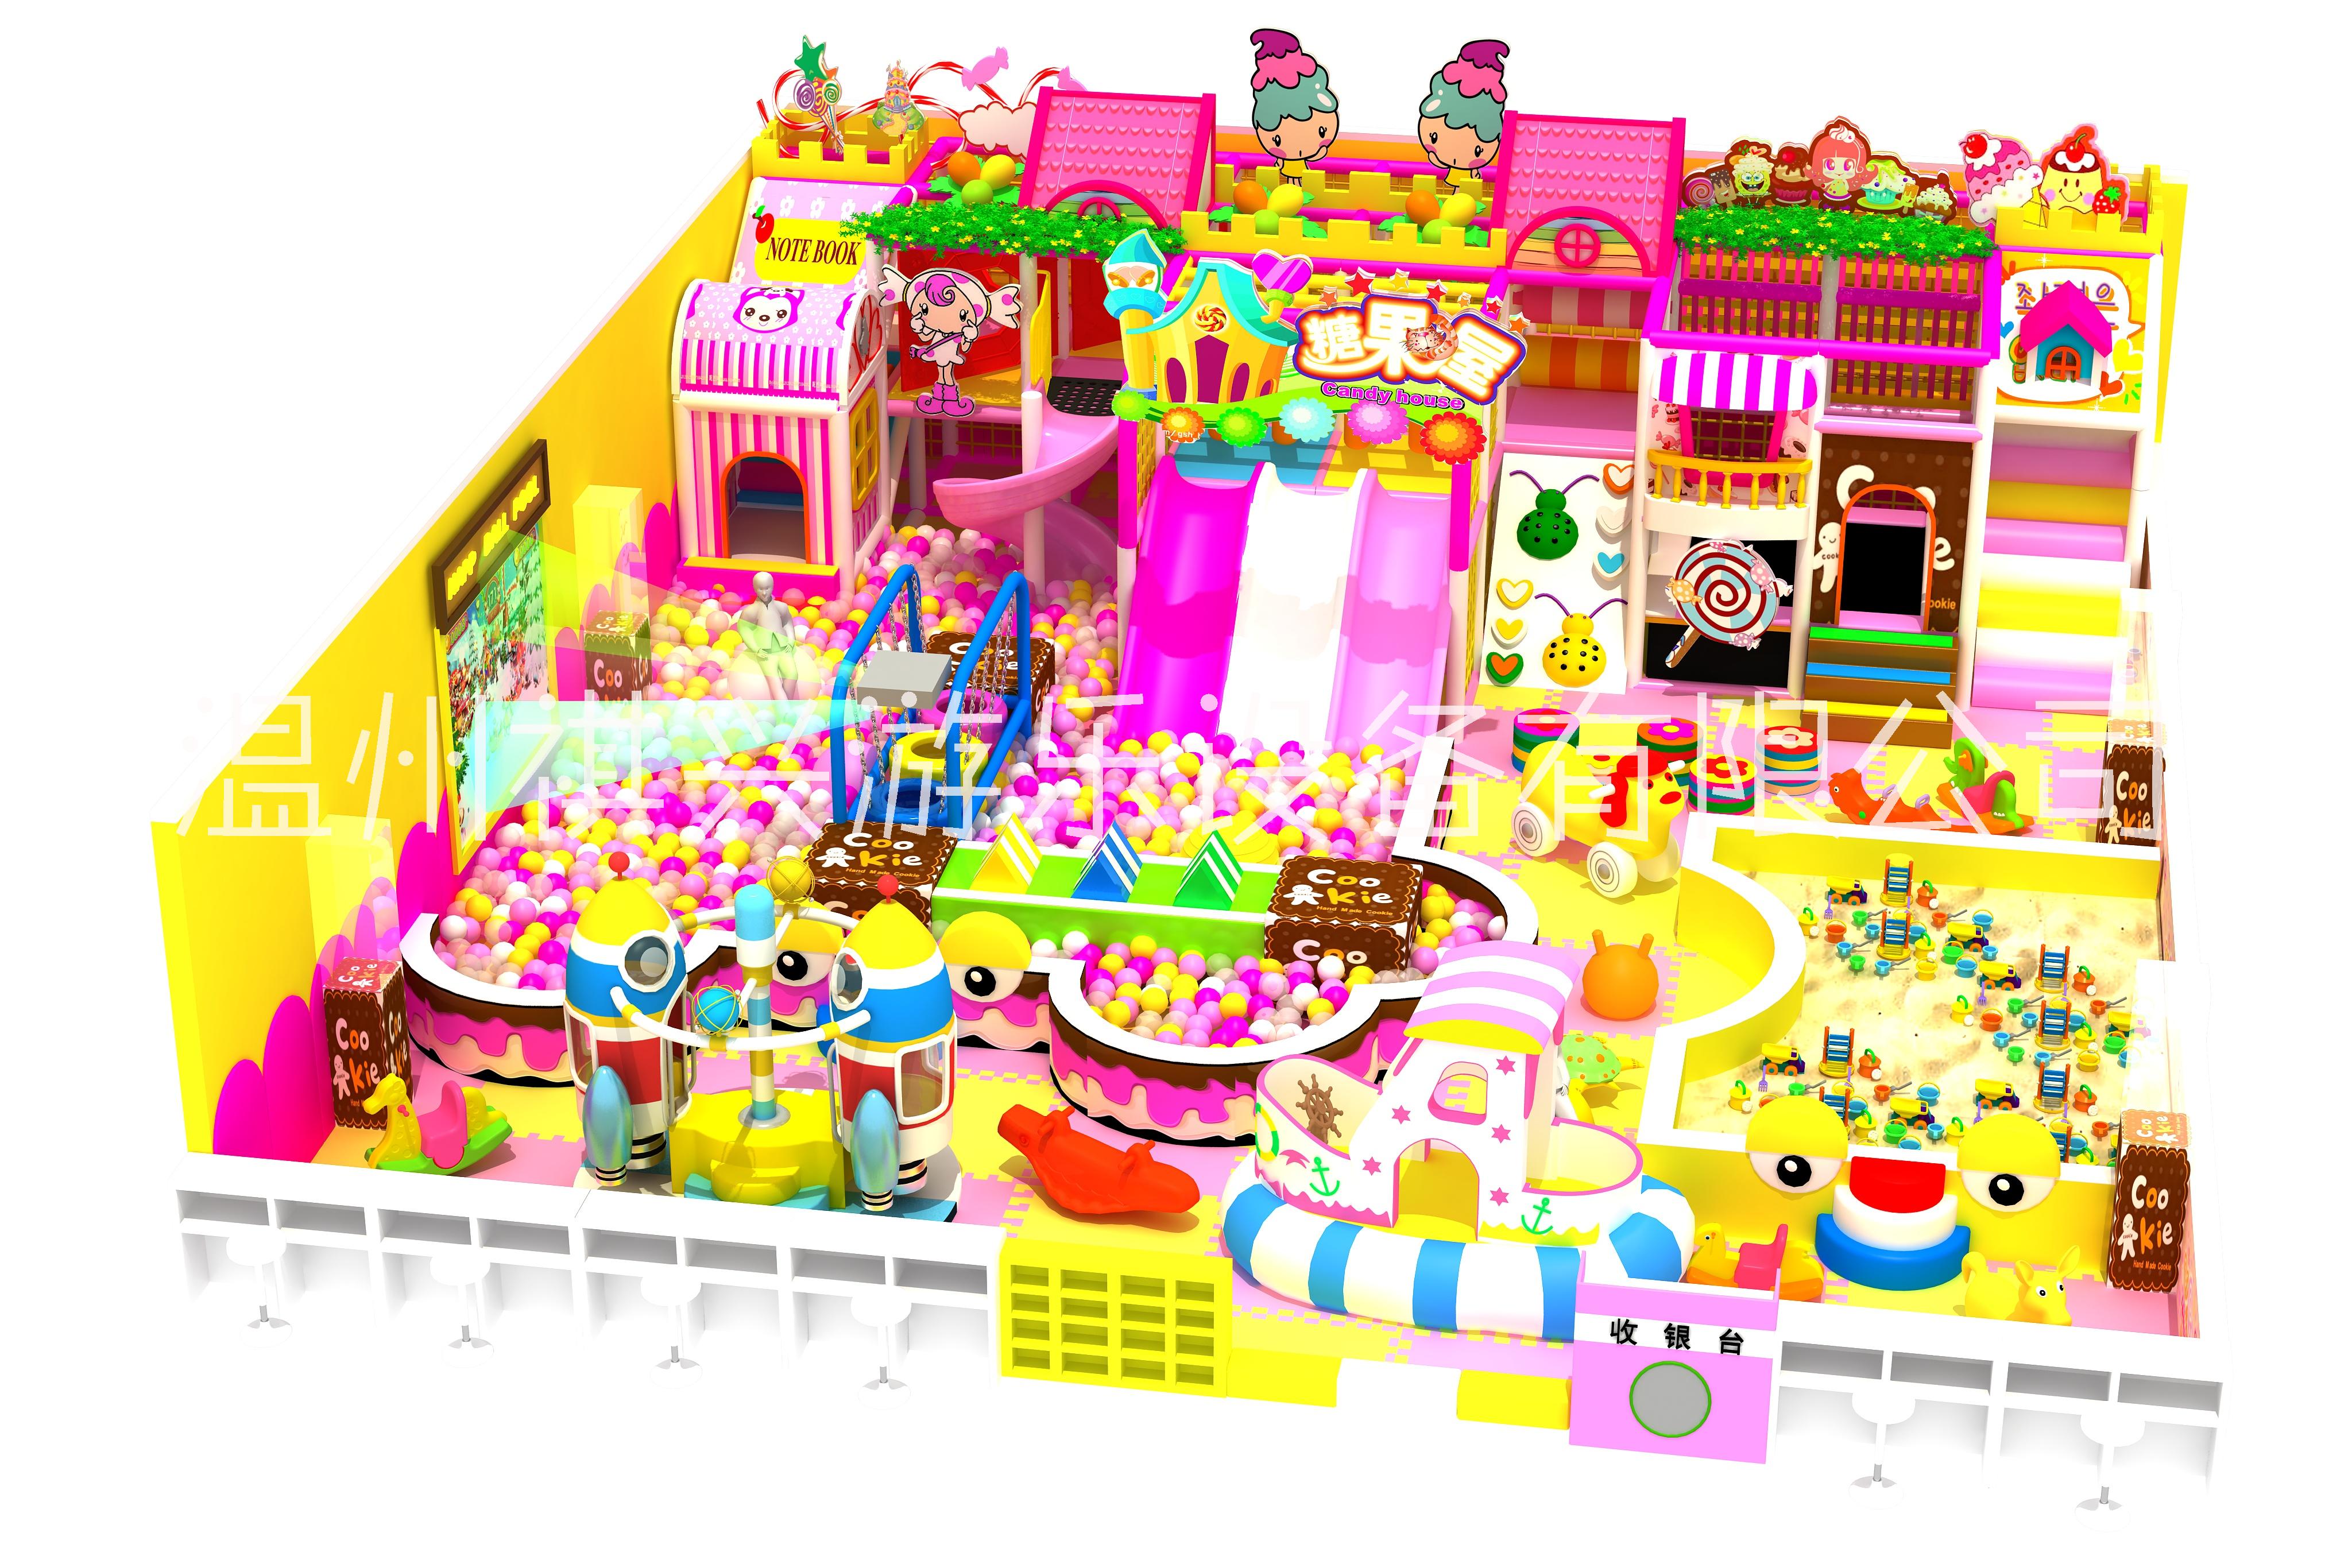 淘气堡儿童乐园 室内小型游乐场 糖果主题大型商场滑梯 蹦床乐园图片